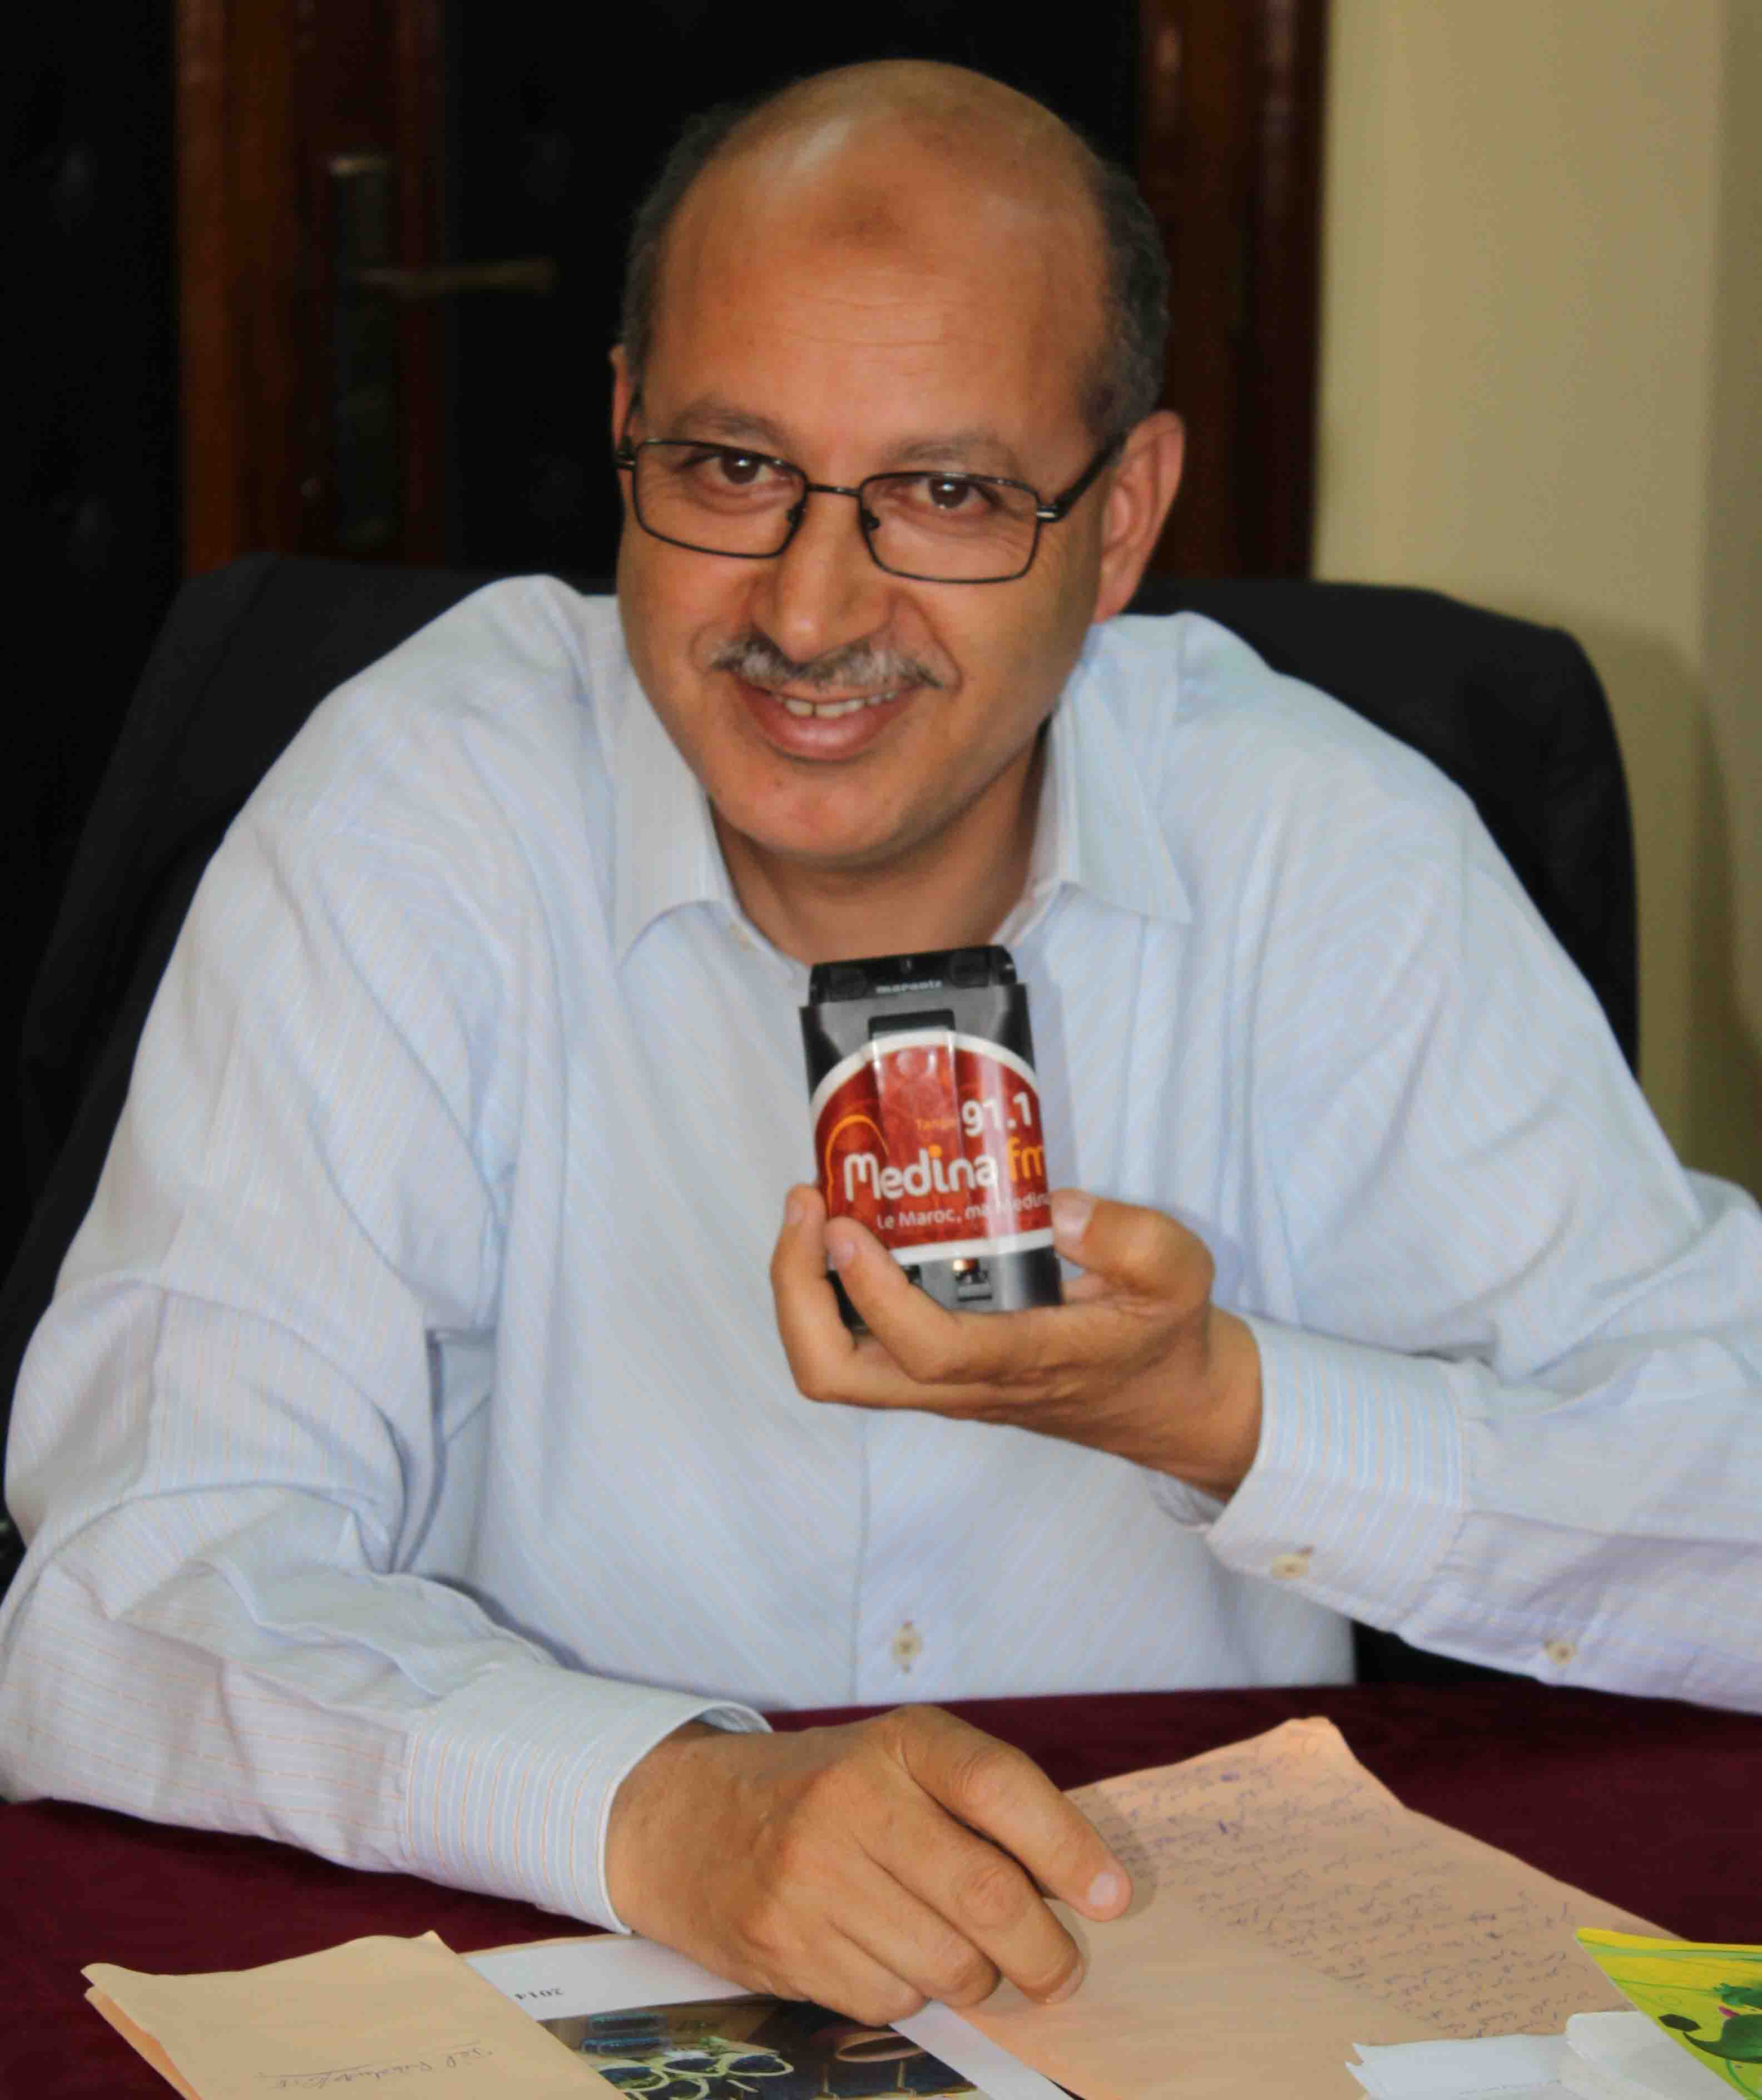 تصريح للسيد الغفوري عبد اللطيف رئيس قسم الشراكة و دعم التنمية بالمديرية الجهوية للفلاحة لدكالة عبدة